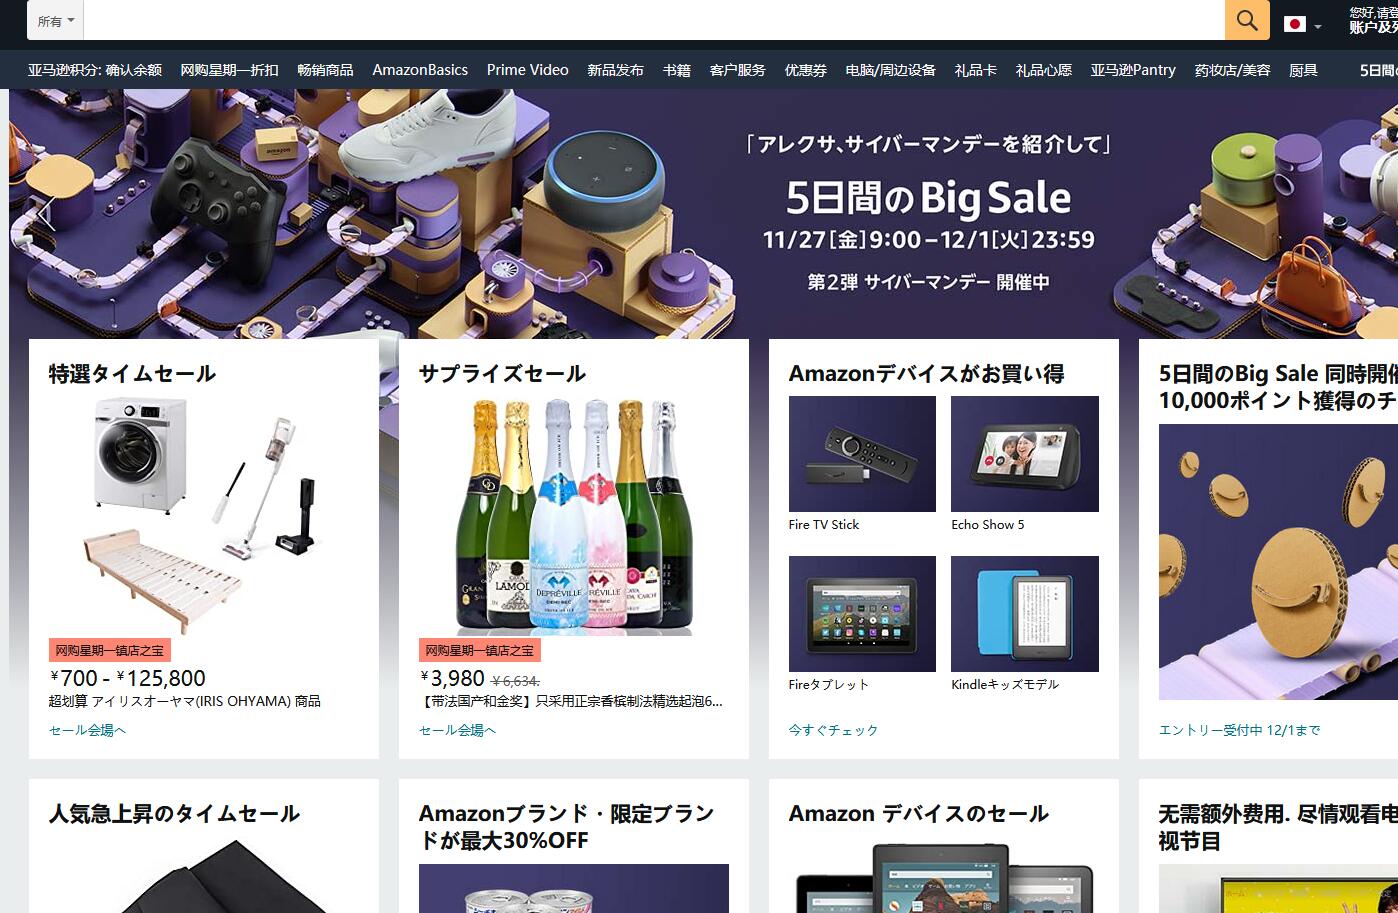 Amazon日本亚马逊官网 日本亚马逊官方海淘网站